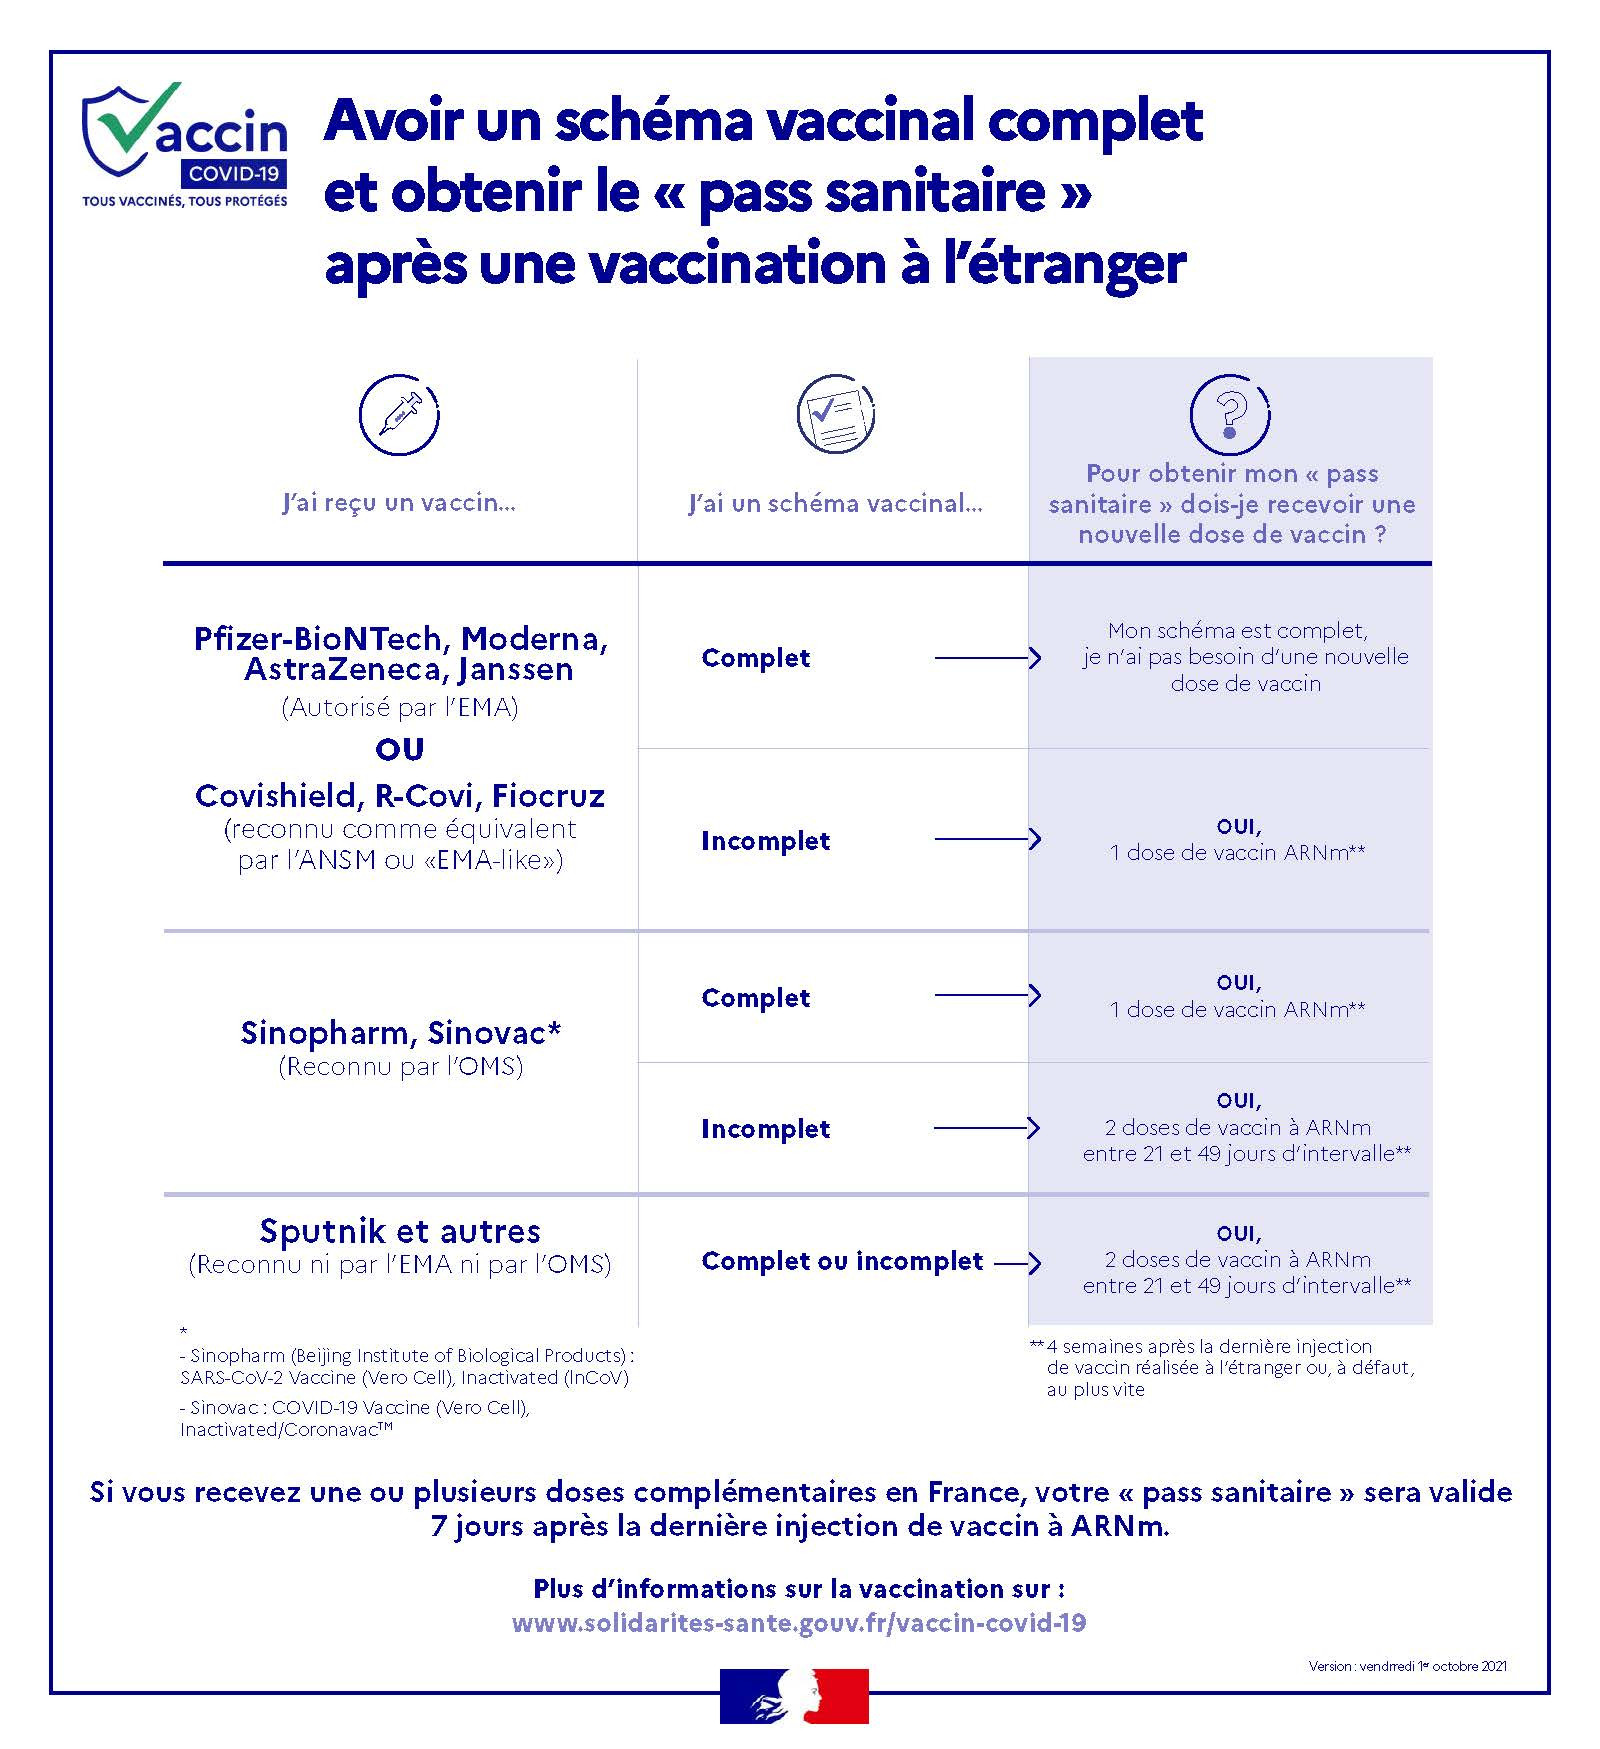 infog_vaccins_de_l_etranger.jpg